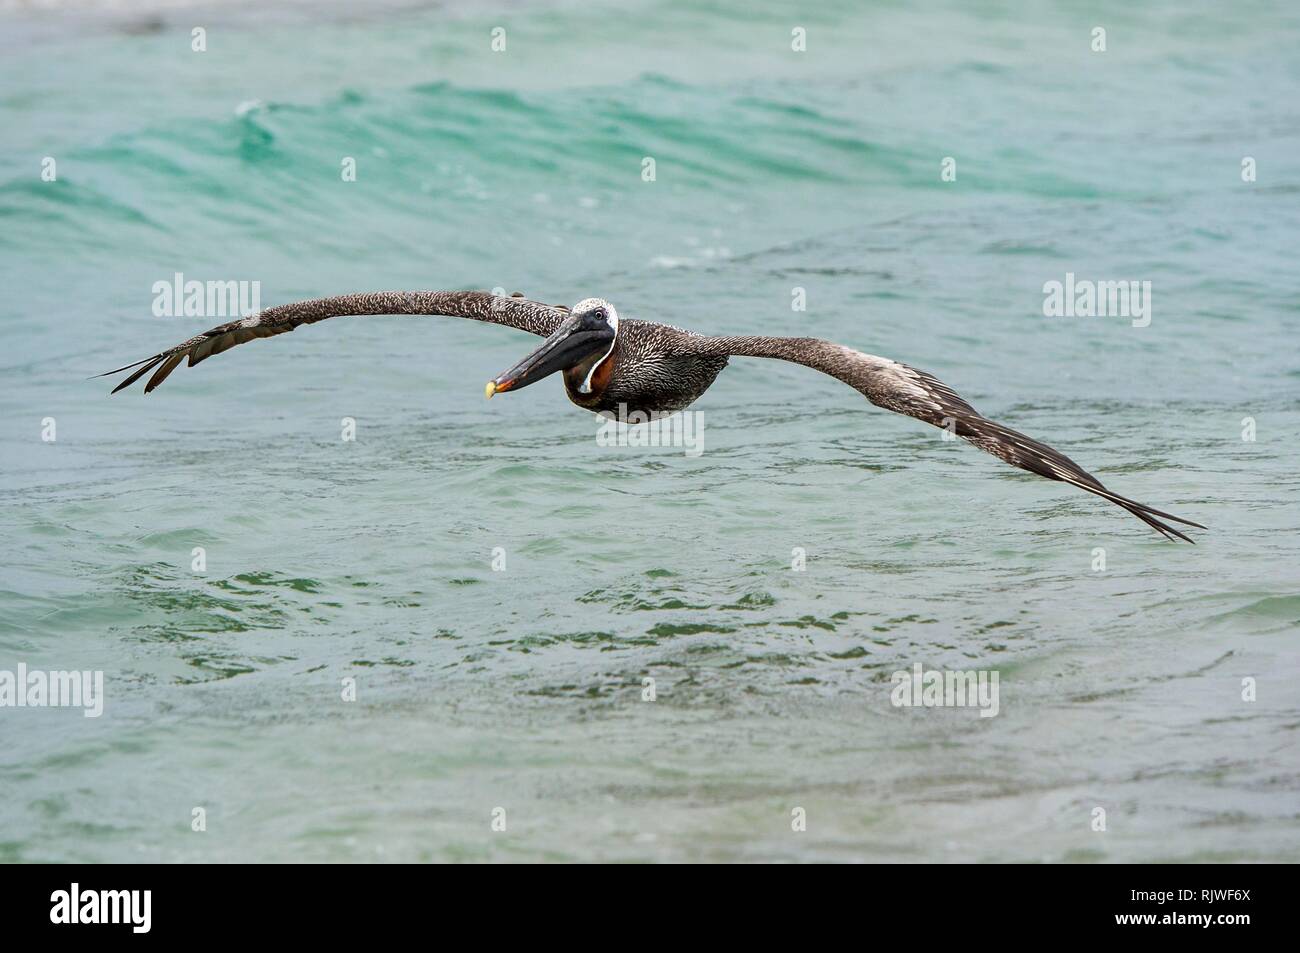 Pelicano café (Pelicanus Occidentalis urinator) en vuelo, la Isla Isabela, Galápagos, Ecuador Foto de stock